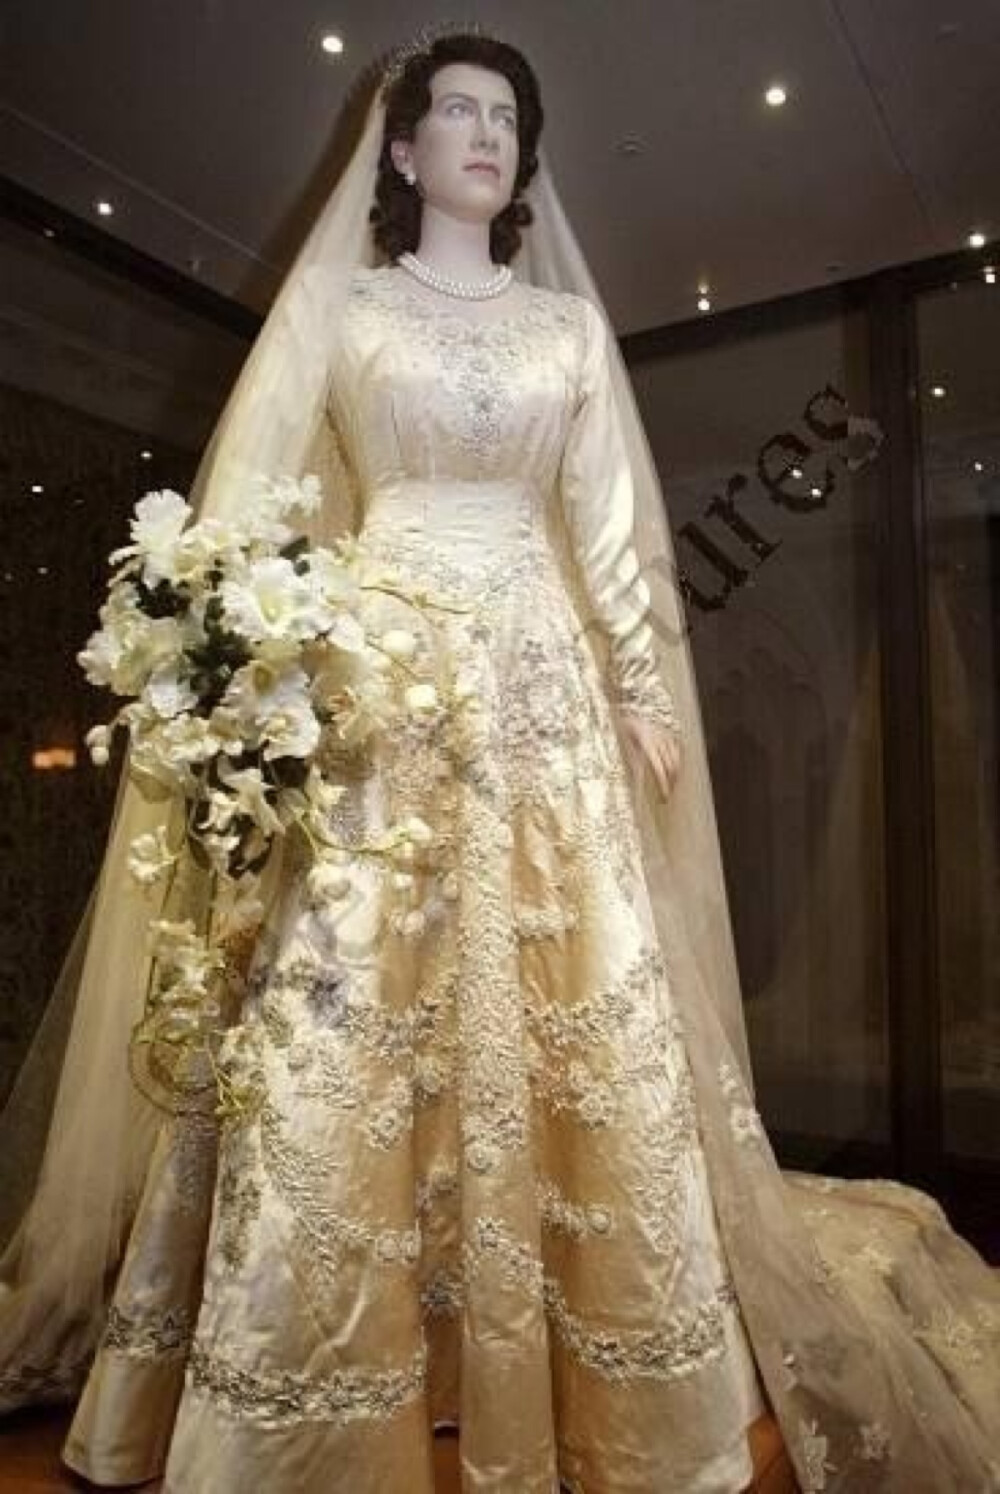 英国女王伊丽莎白二世的婚纱，出自诺曼爵士之手，婚纱上手工缝缀了一万颗珍珠。这款以文艺复兴概念设计的传统婚纱，象牙色的锦缎配上珍珠及水晶的缝纫手法以及精细繁复的手工刺绣，充分显示了“日不落帝国”的尊贵与华丽。